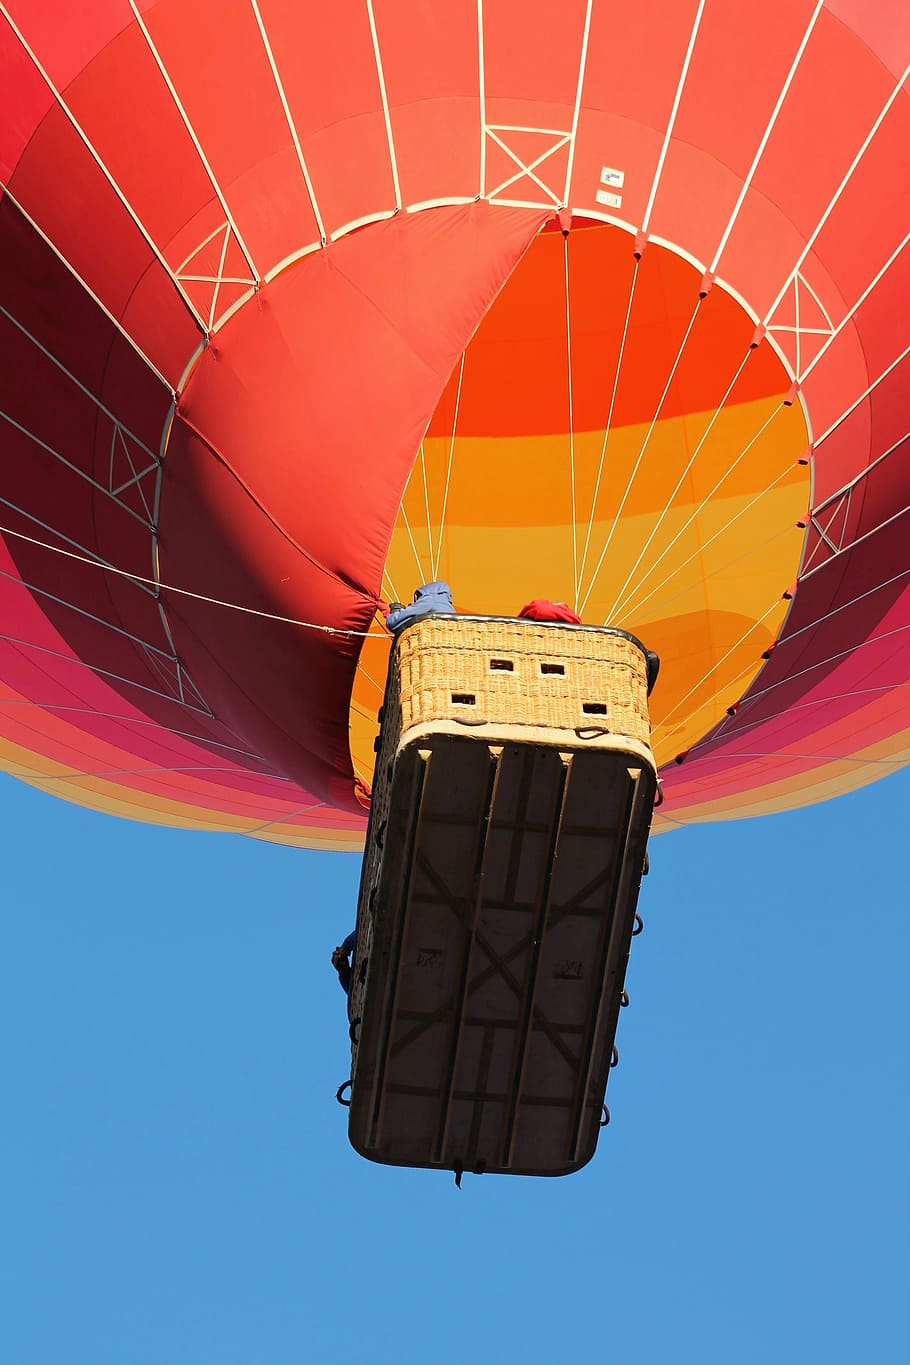 hot air balloon, albuquerque balloon fiesta, balloons, sky, HD wallpaper